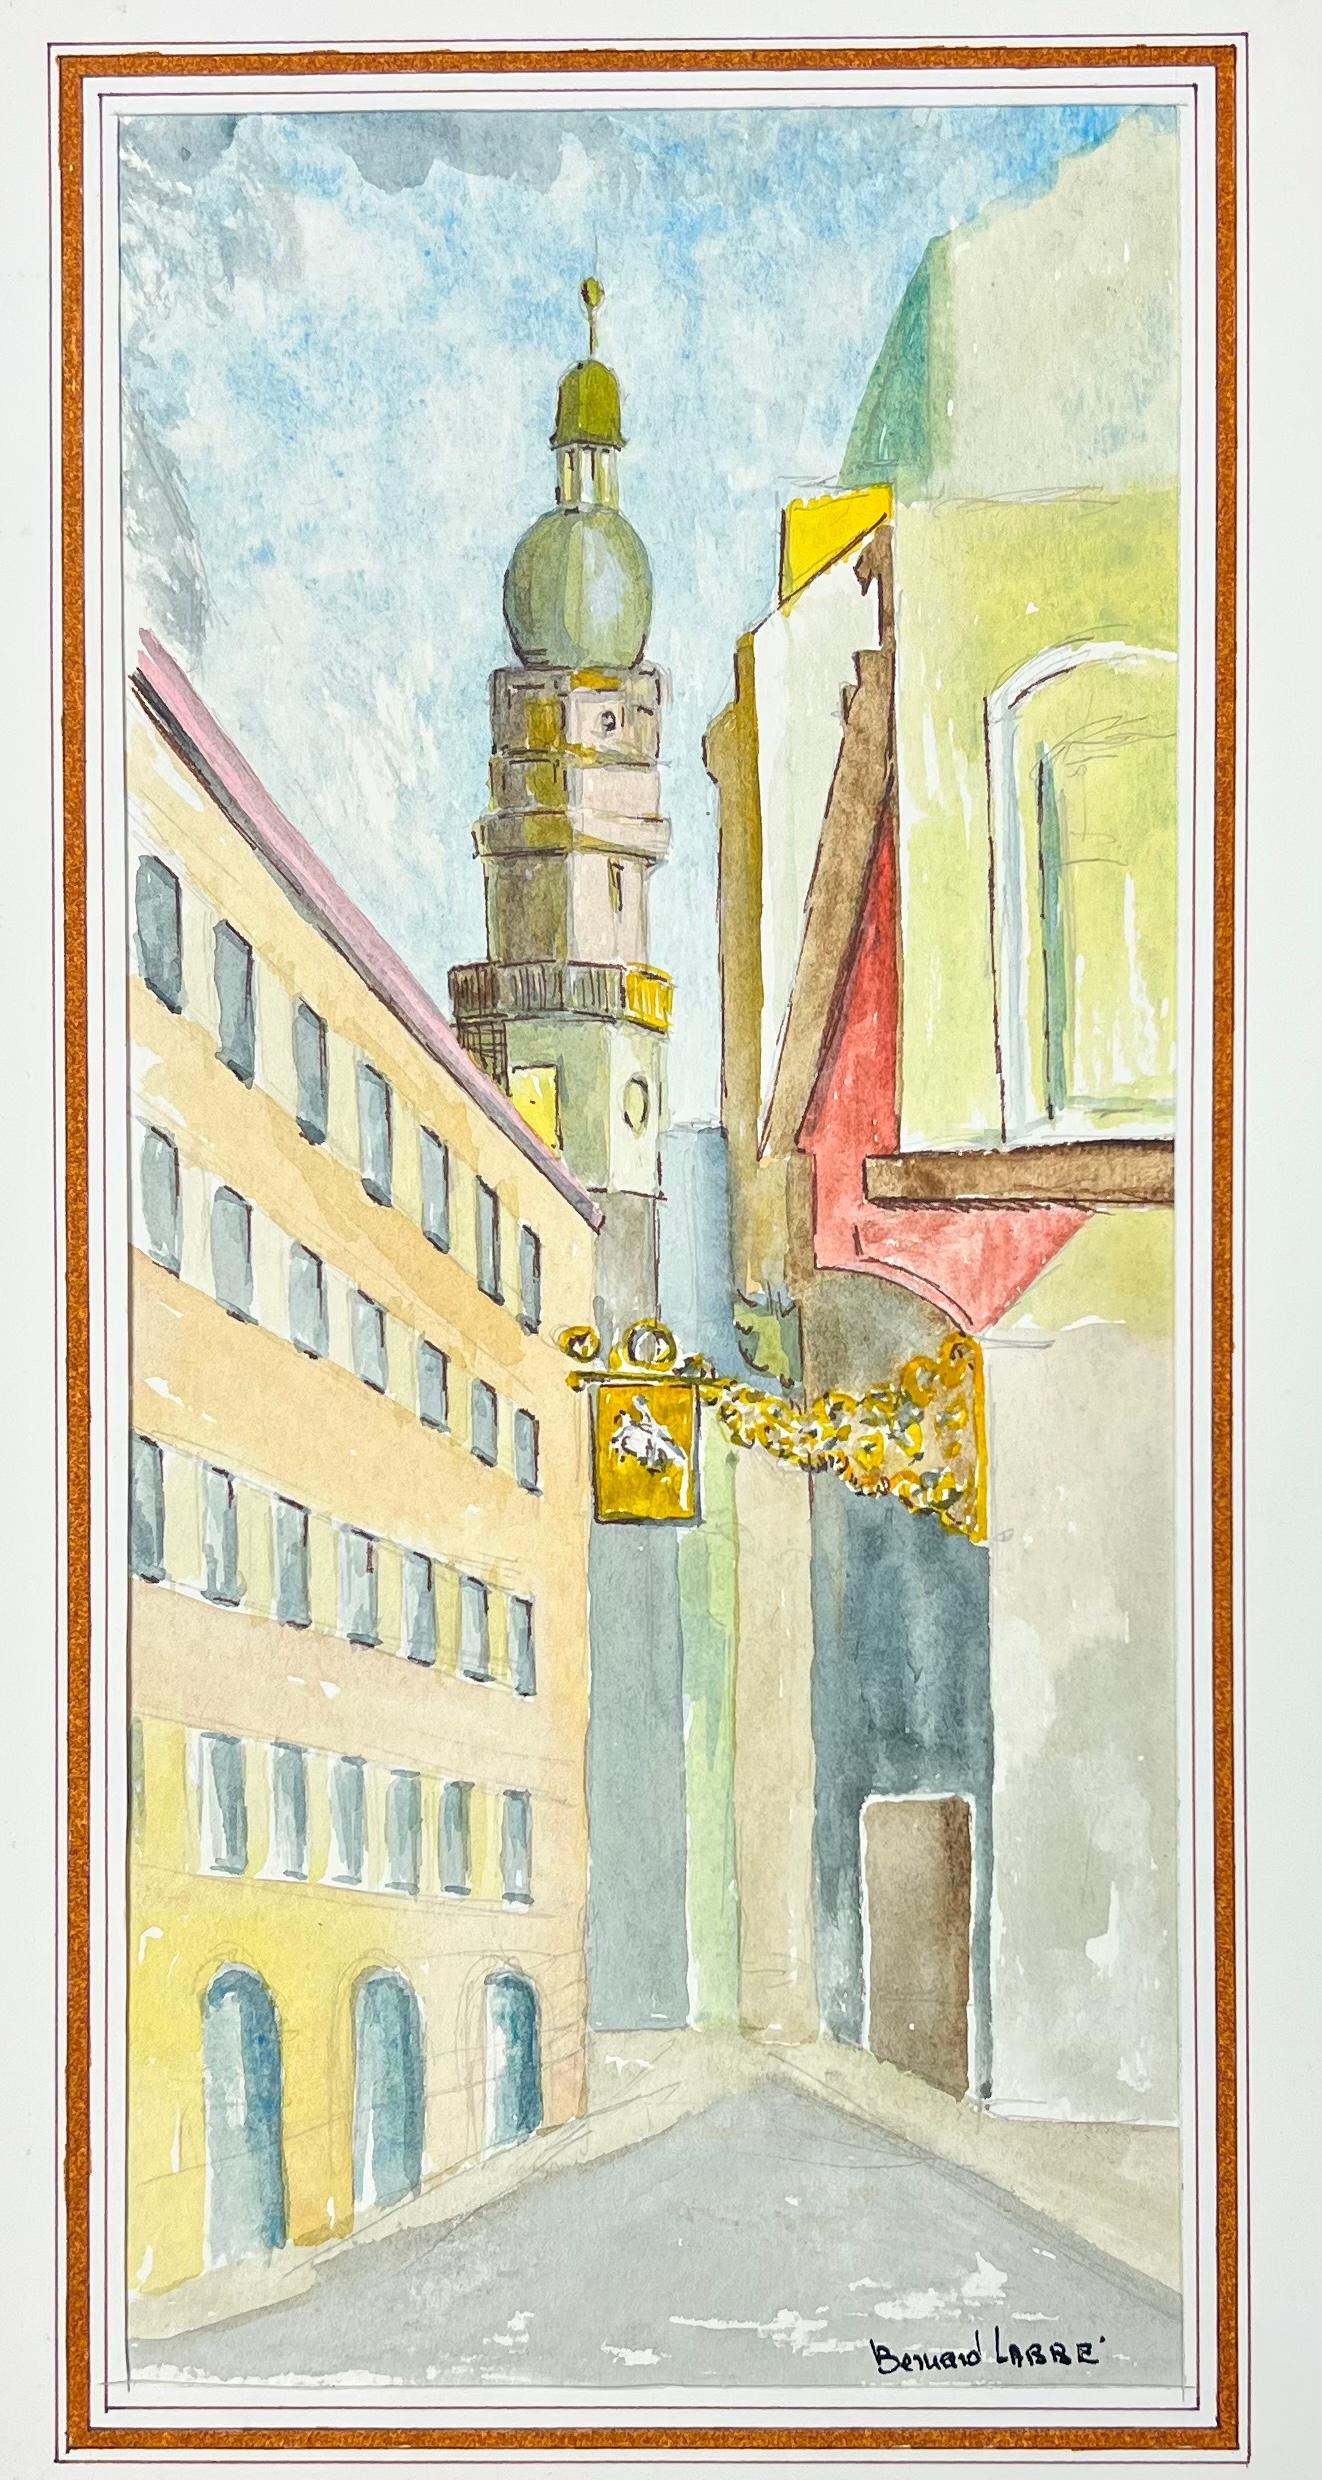 Peinture moderniste/ cubiste des années 1950 - Down The French Streets - Painting de Bernard Labbe